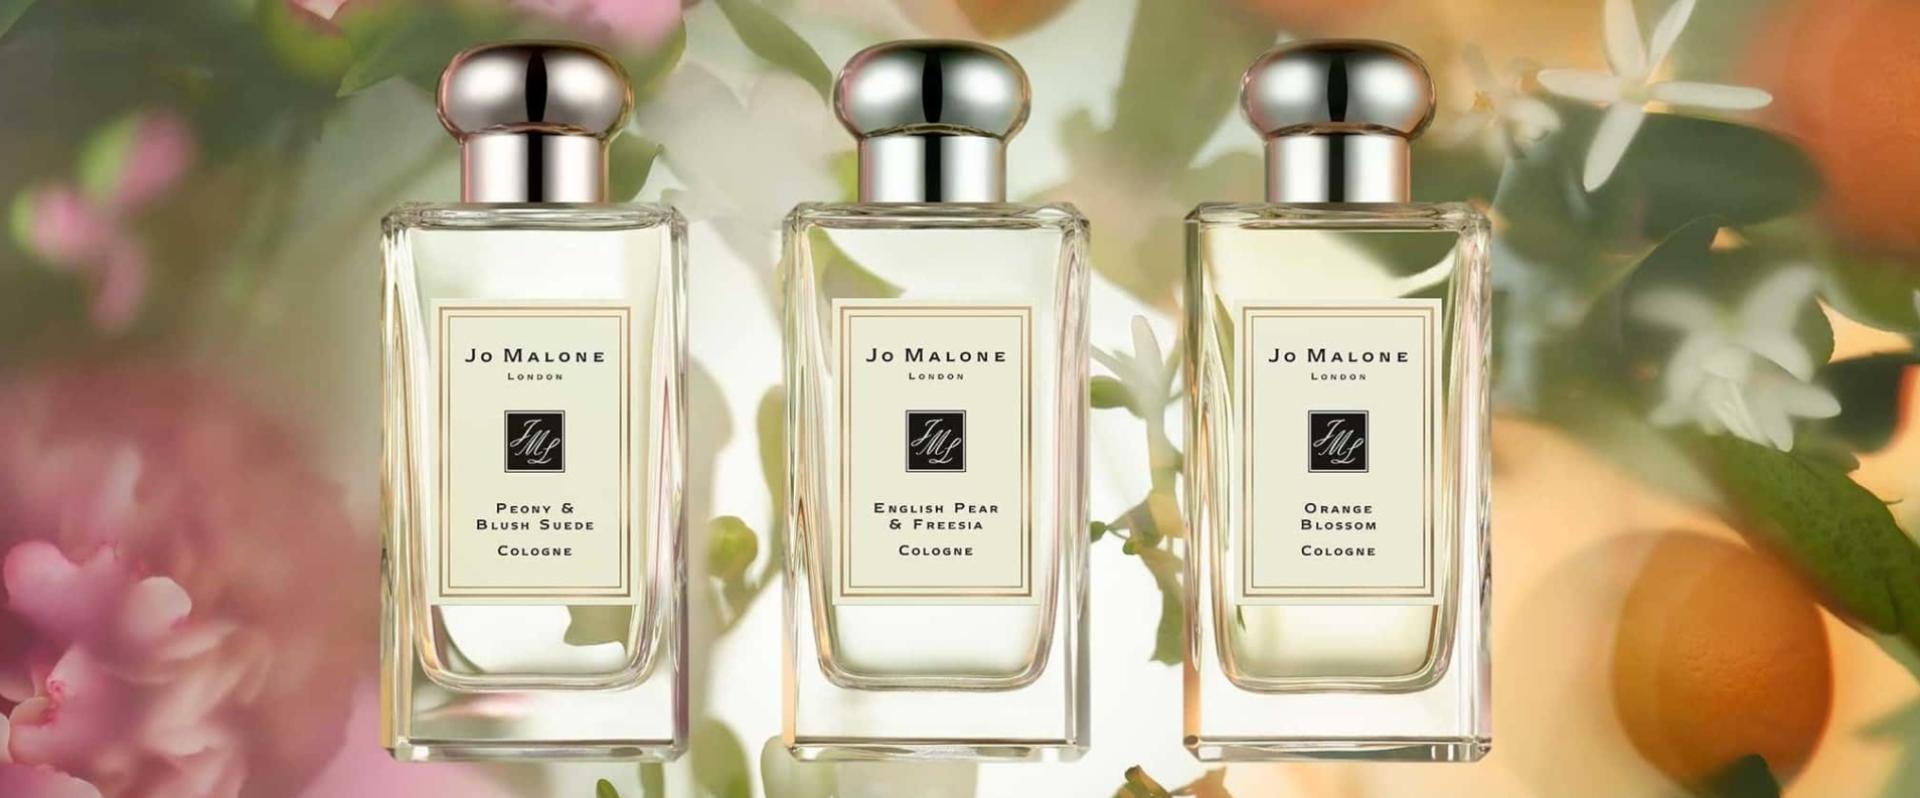 Estée Lauder Companies rozszerza działalność perfumeryjną o nowe paryskie atelier